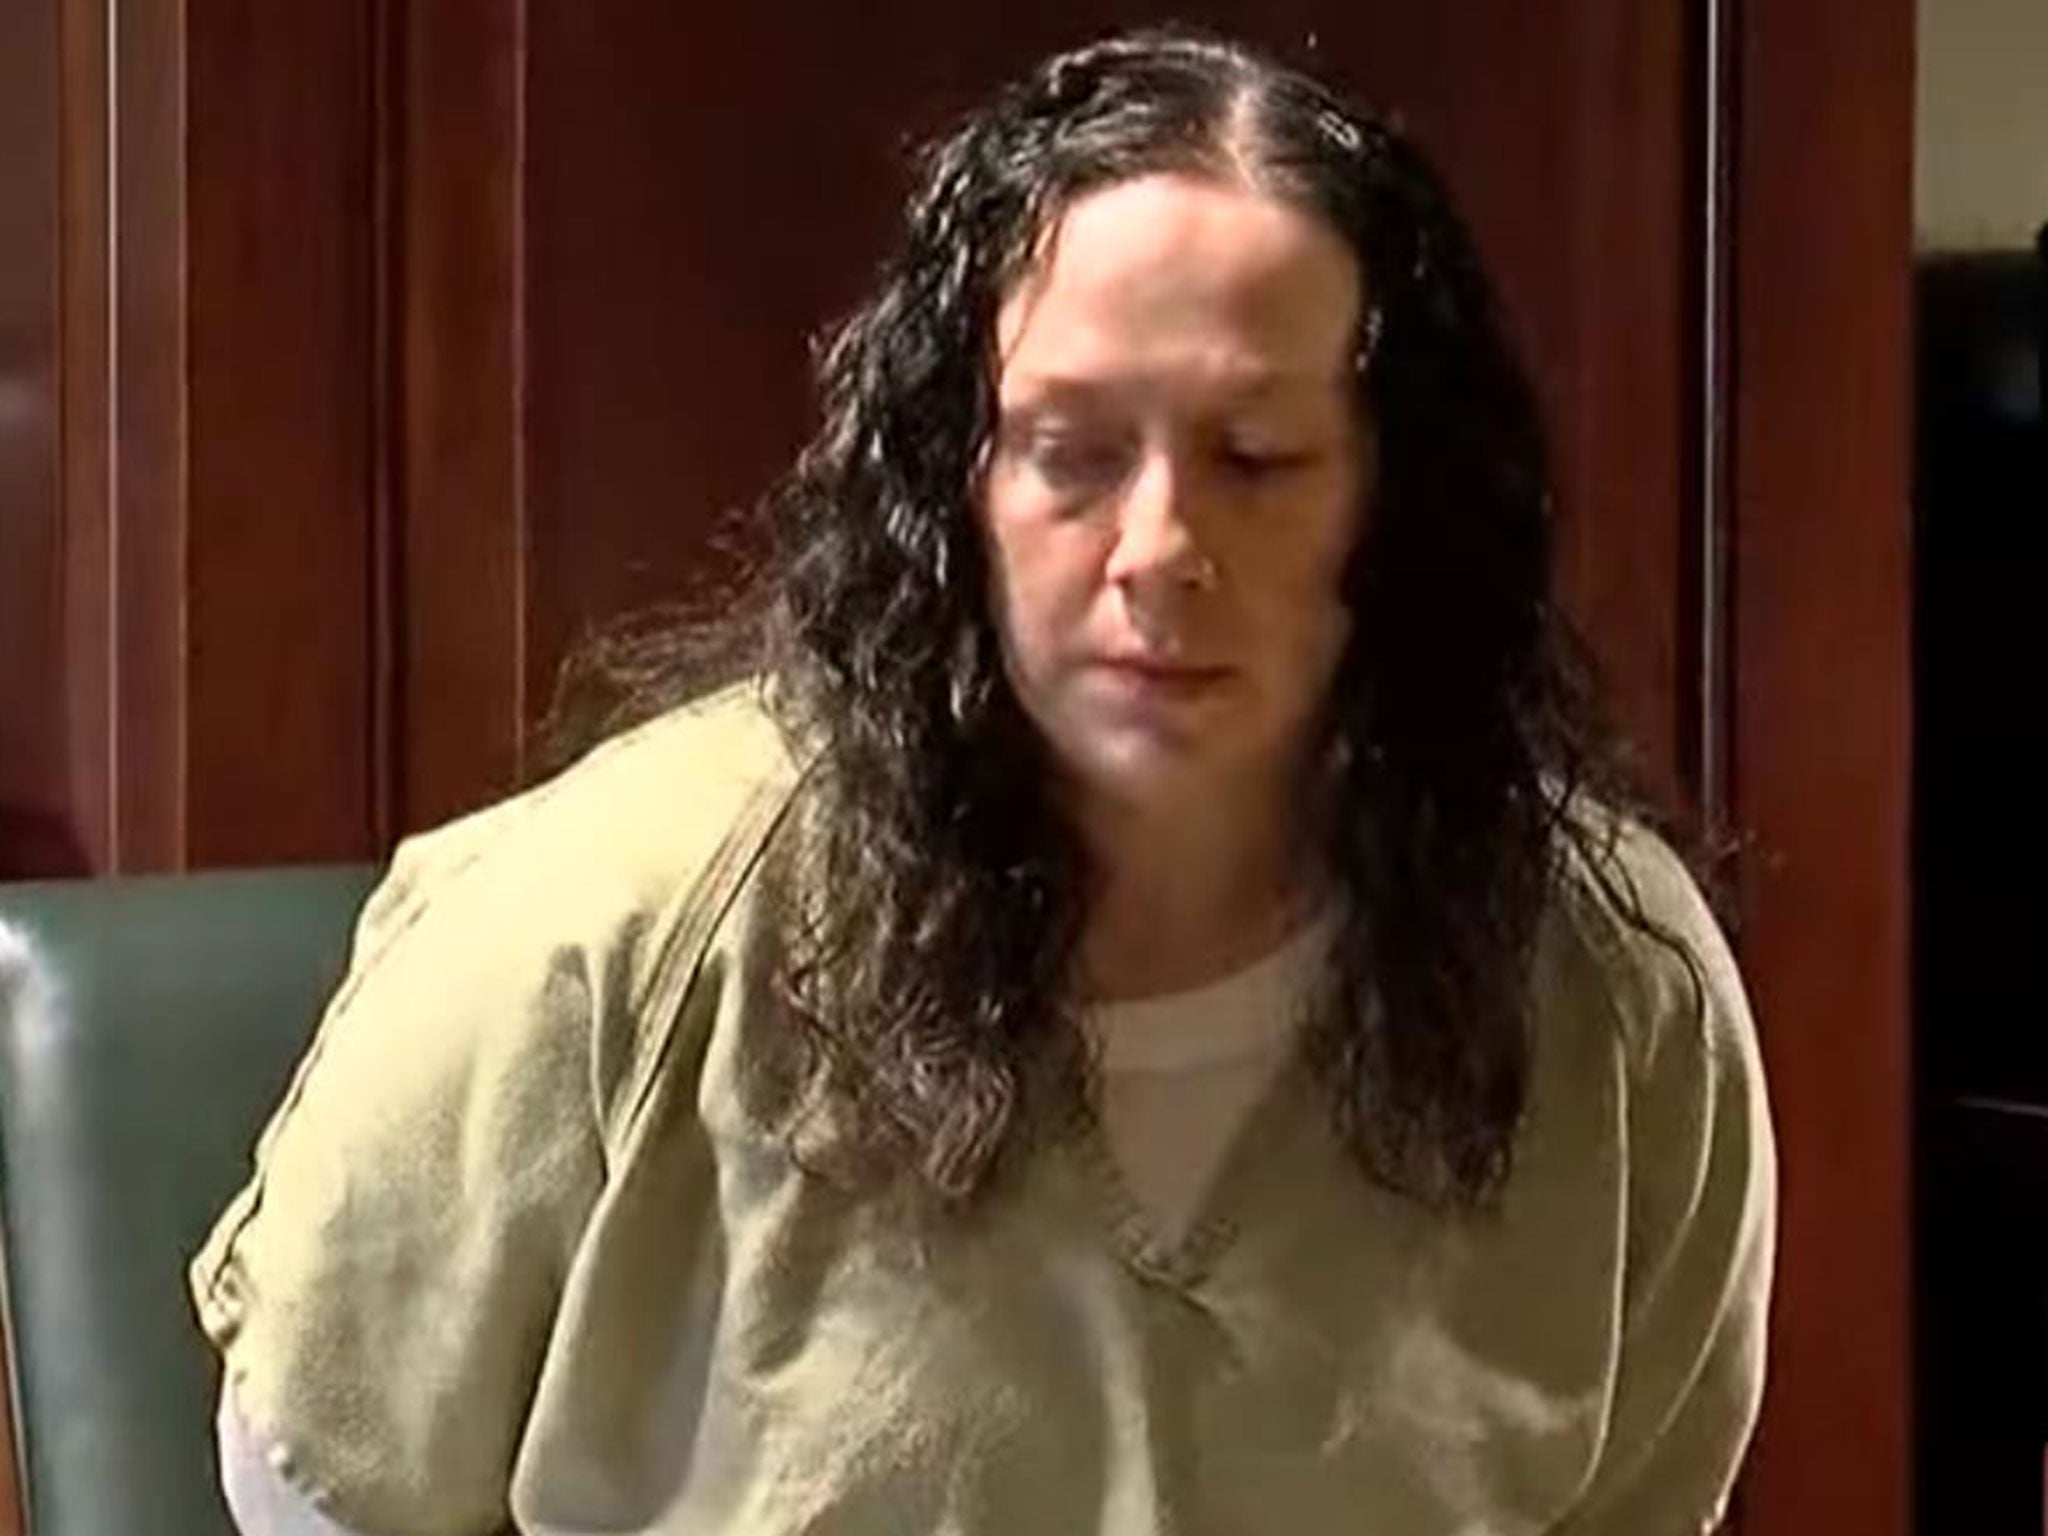 April Corcoran appearing at court in Cincinnati on 9 June 2016